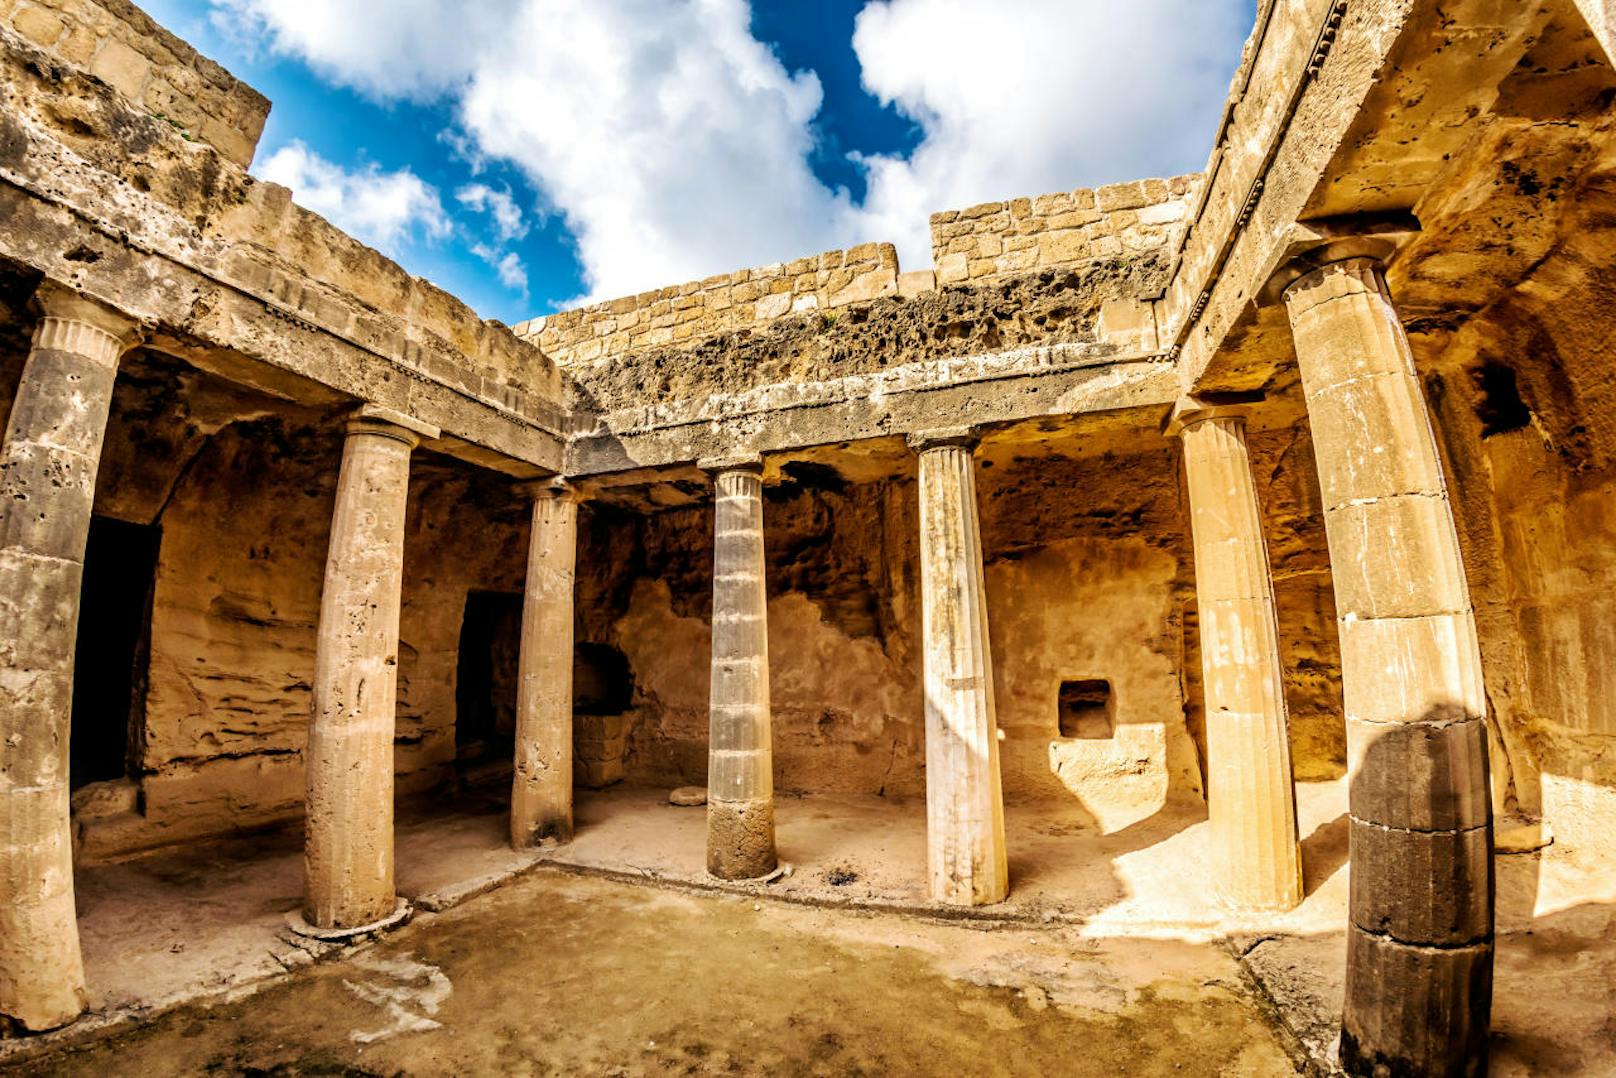 <b>Platz neun: Pafos, Zypern</b> «Die europäische Kulturhauptstadt 2017. Katakomben, Tempel, Schlösser, mittelalterliche Bäder - auf der Insel der Aphrodite liegt Monument über Monument.»